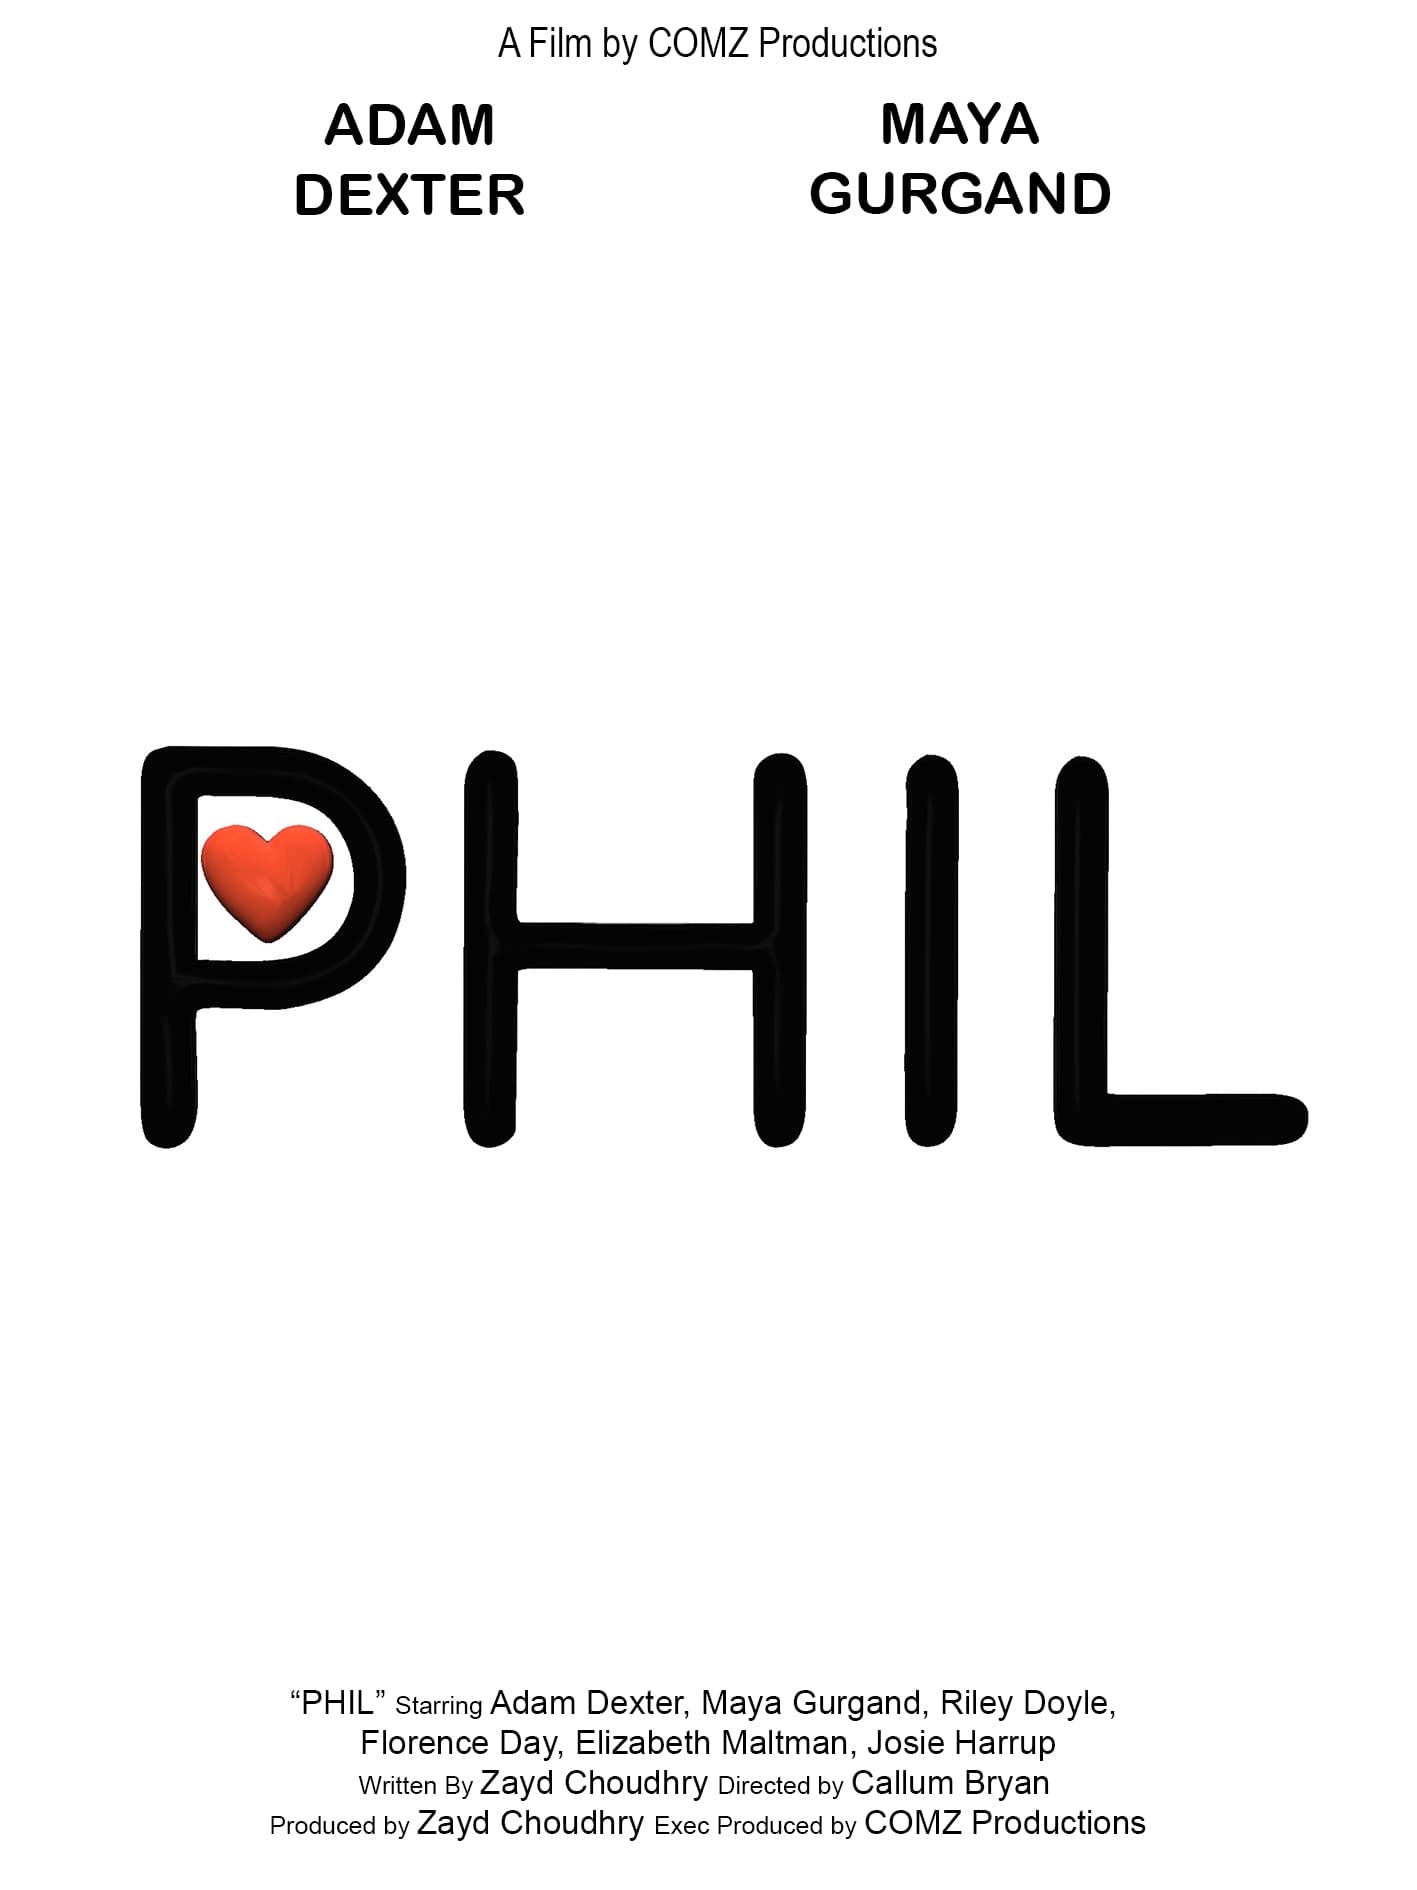 PHIL